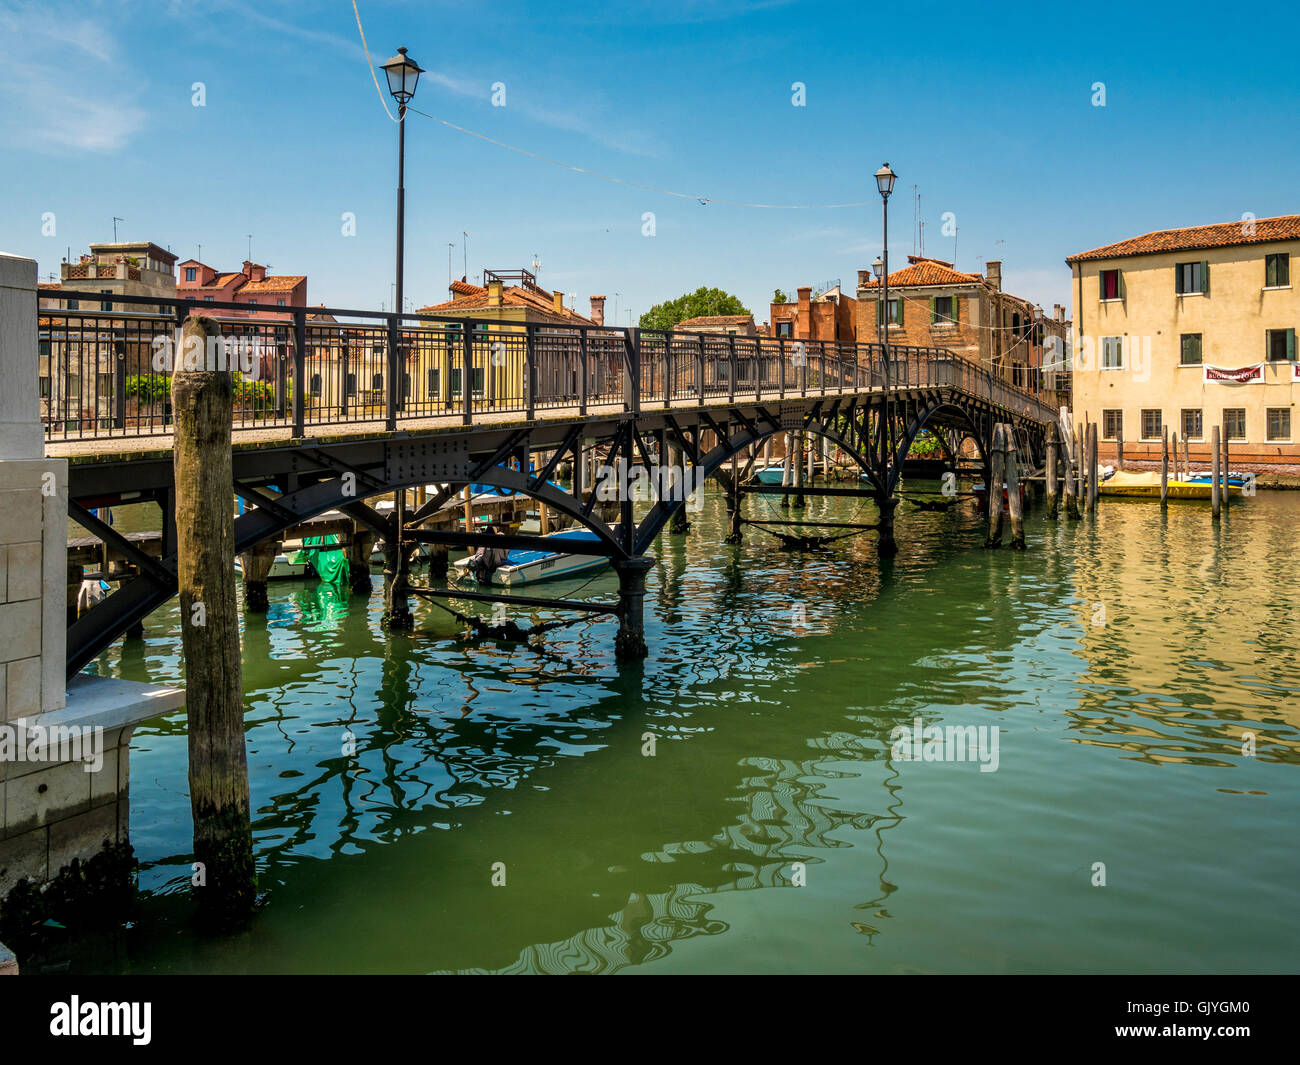 Ponte di Quintavalle crossing the Canale di San Pietro, Venice. Italy. Stock Photo